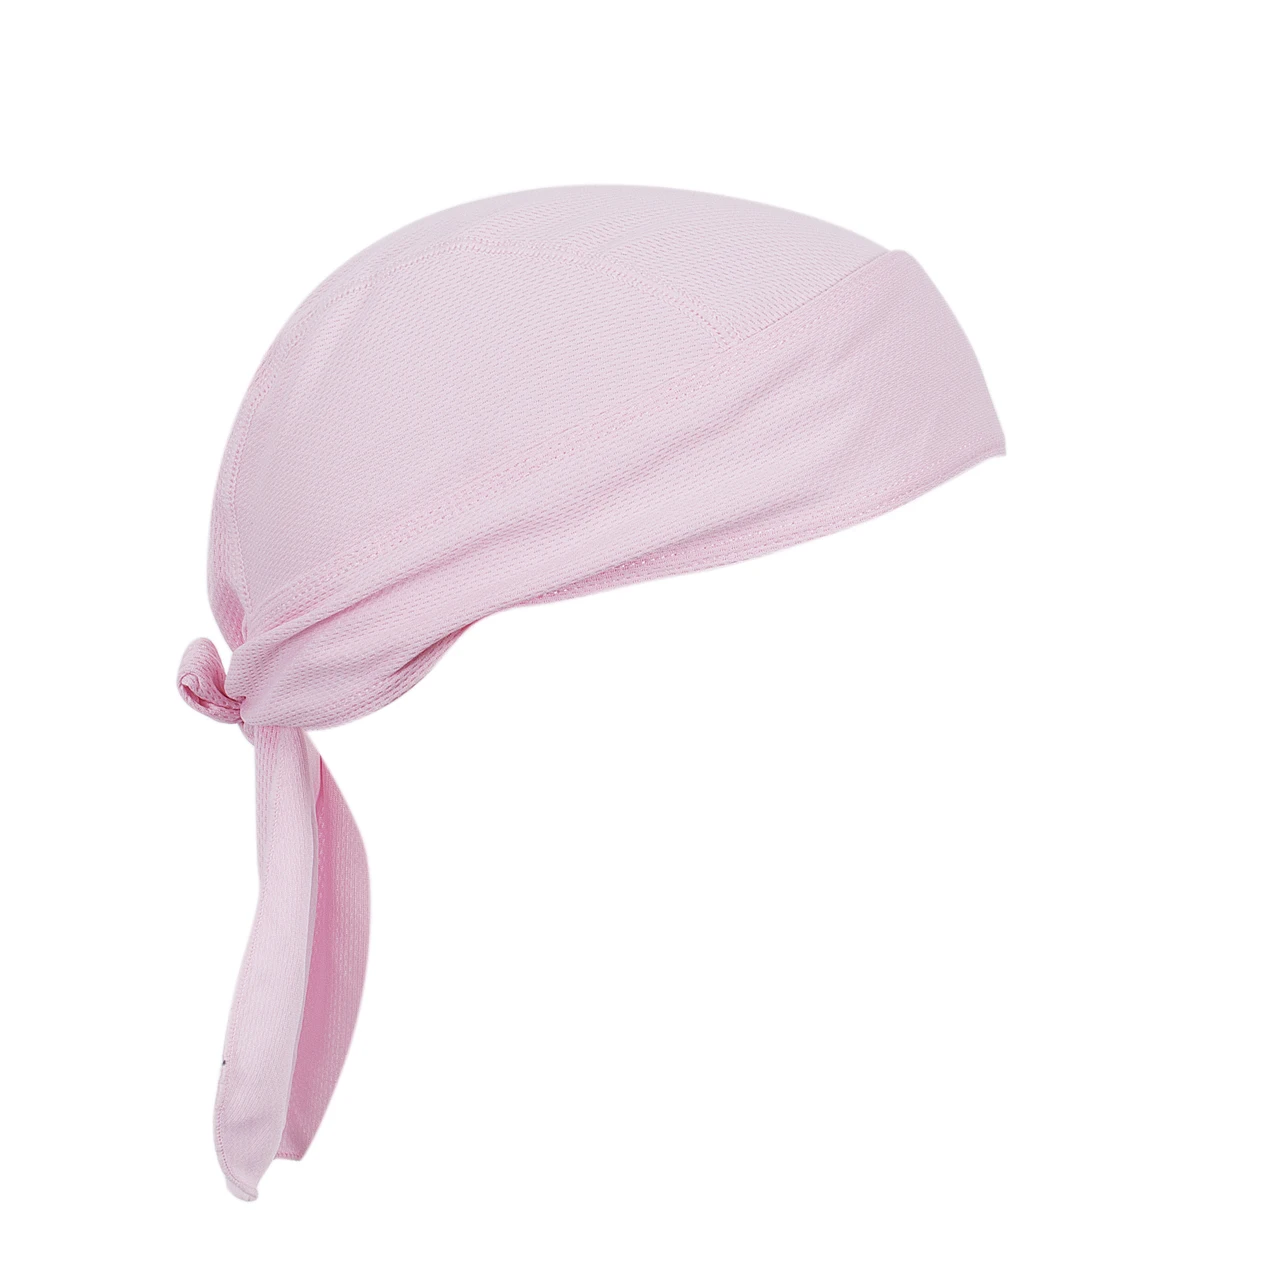 Дышащие многофункциональная для мужчин повязка на голову велосипед велосипедная бандана пиратский платок на голову - Цвет: Розовый